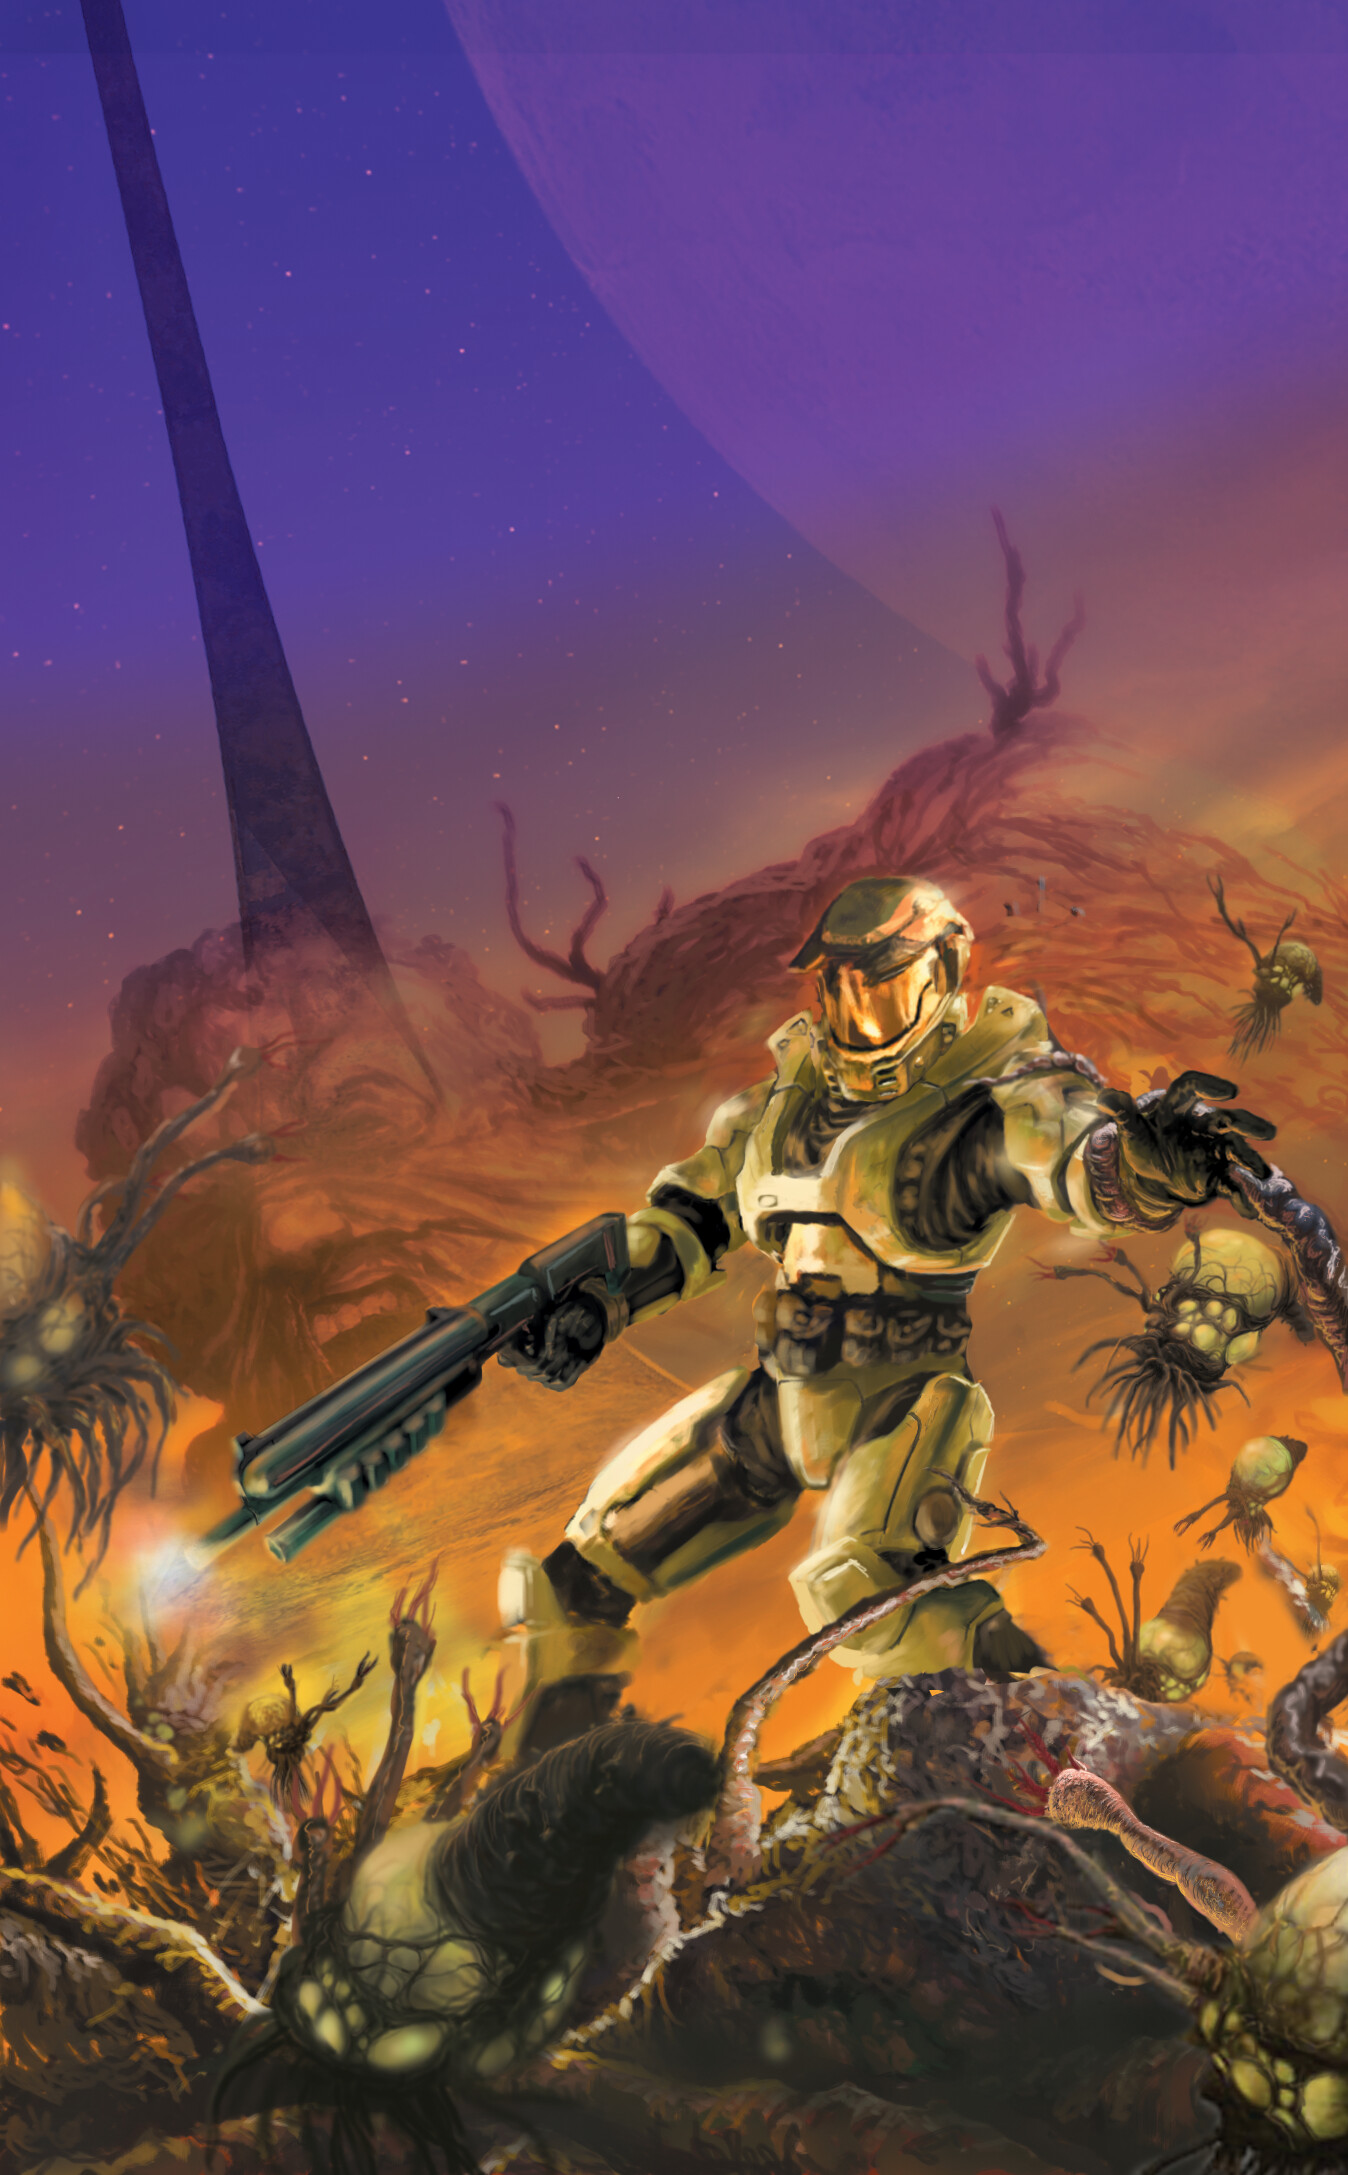 Original cover art of Halo: The Flood